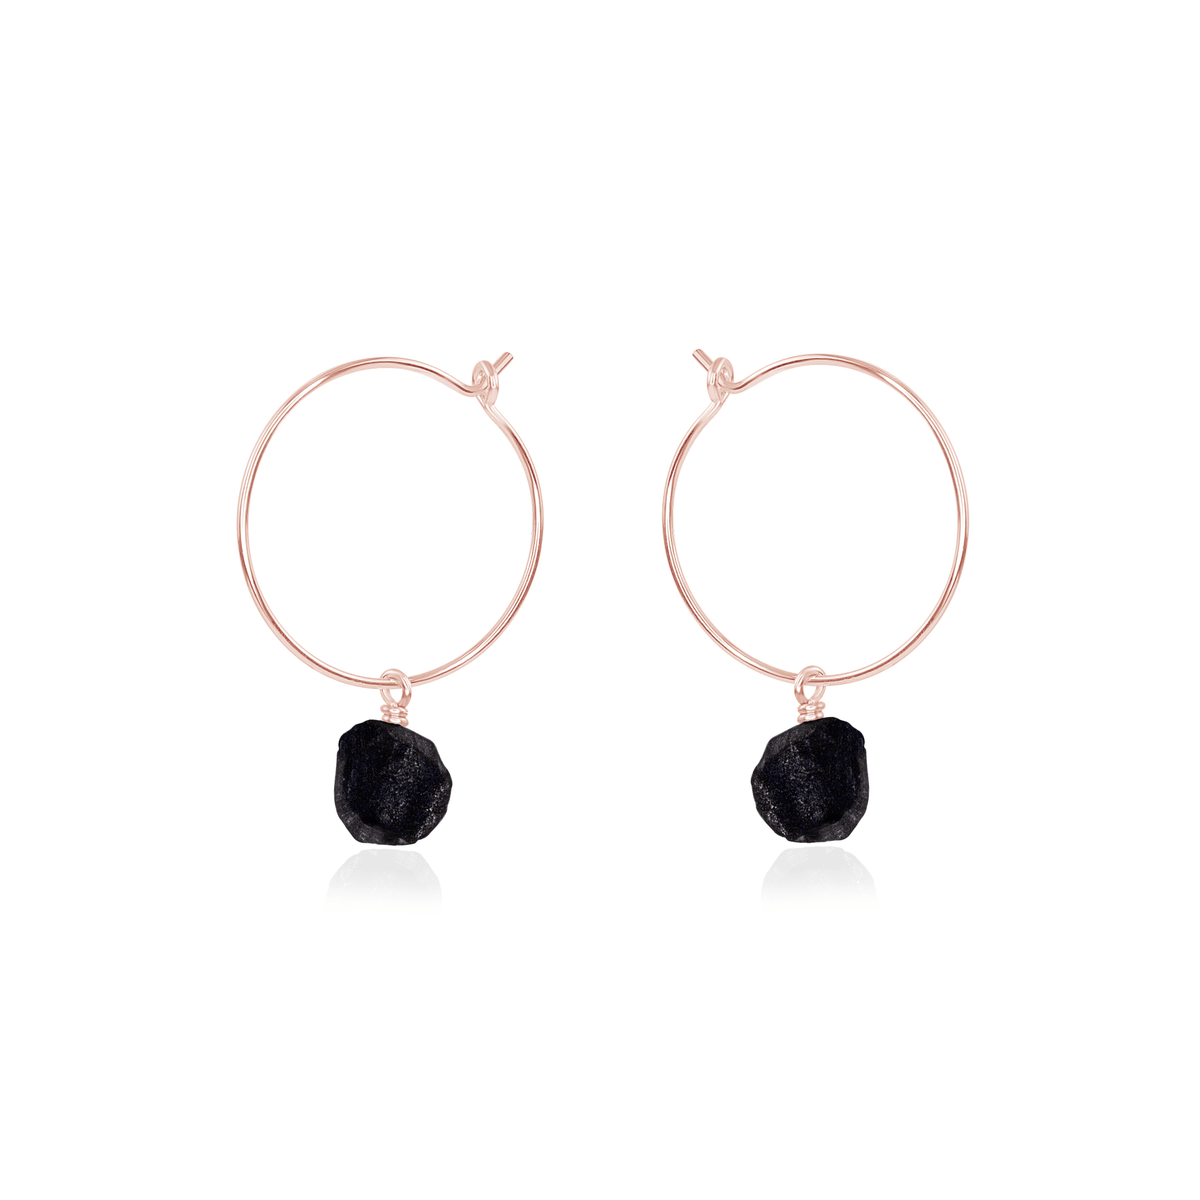 Raw Obsidian Gemstone Dangle Hoop Earrings - Raw Obsidian Gemstone Dangle Hoop Earrings - 14k Rose Gold Fill - Luna Tide Handmade Crystal Jewellery